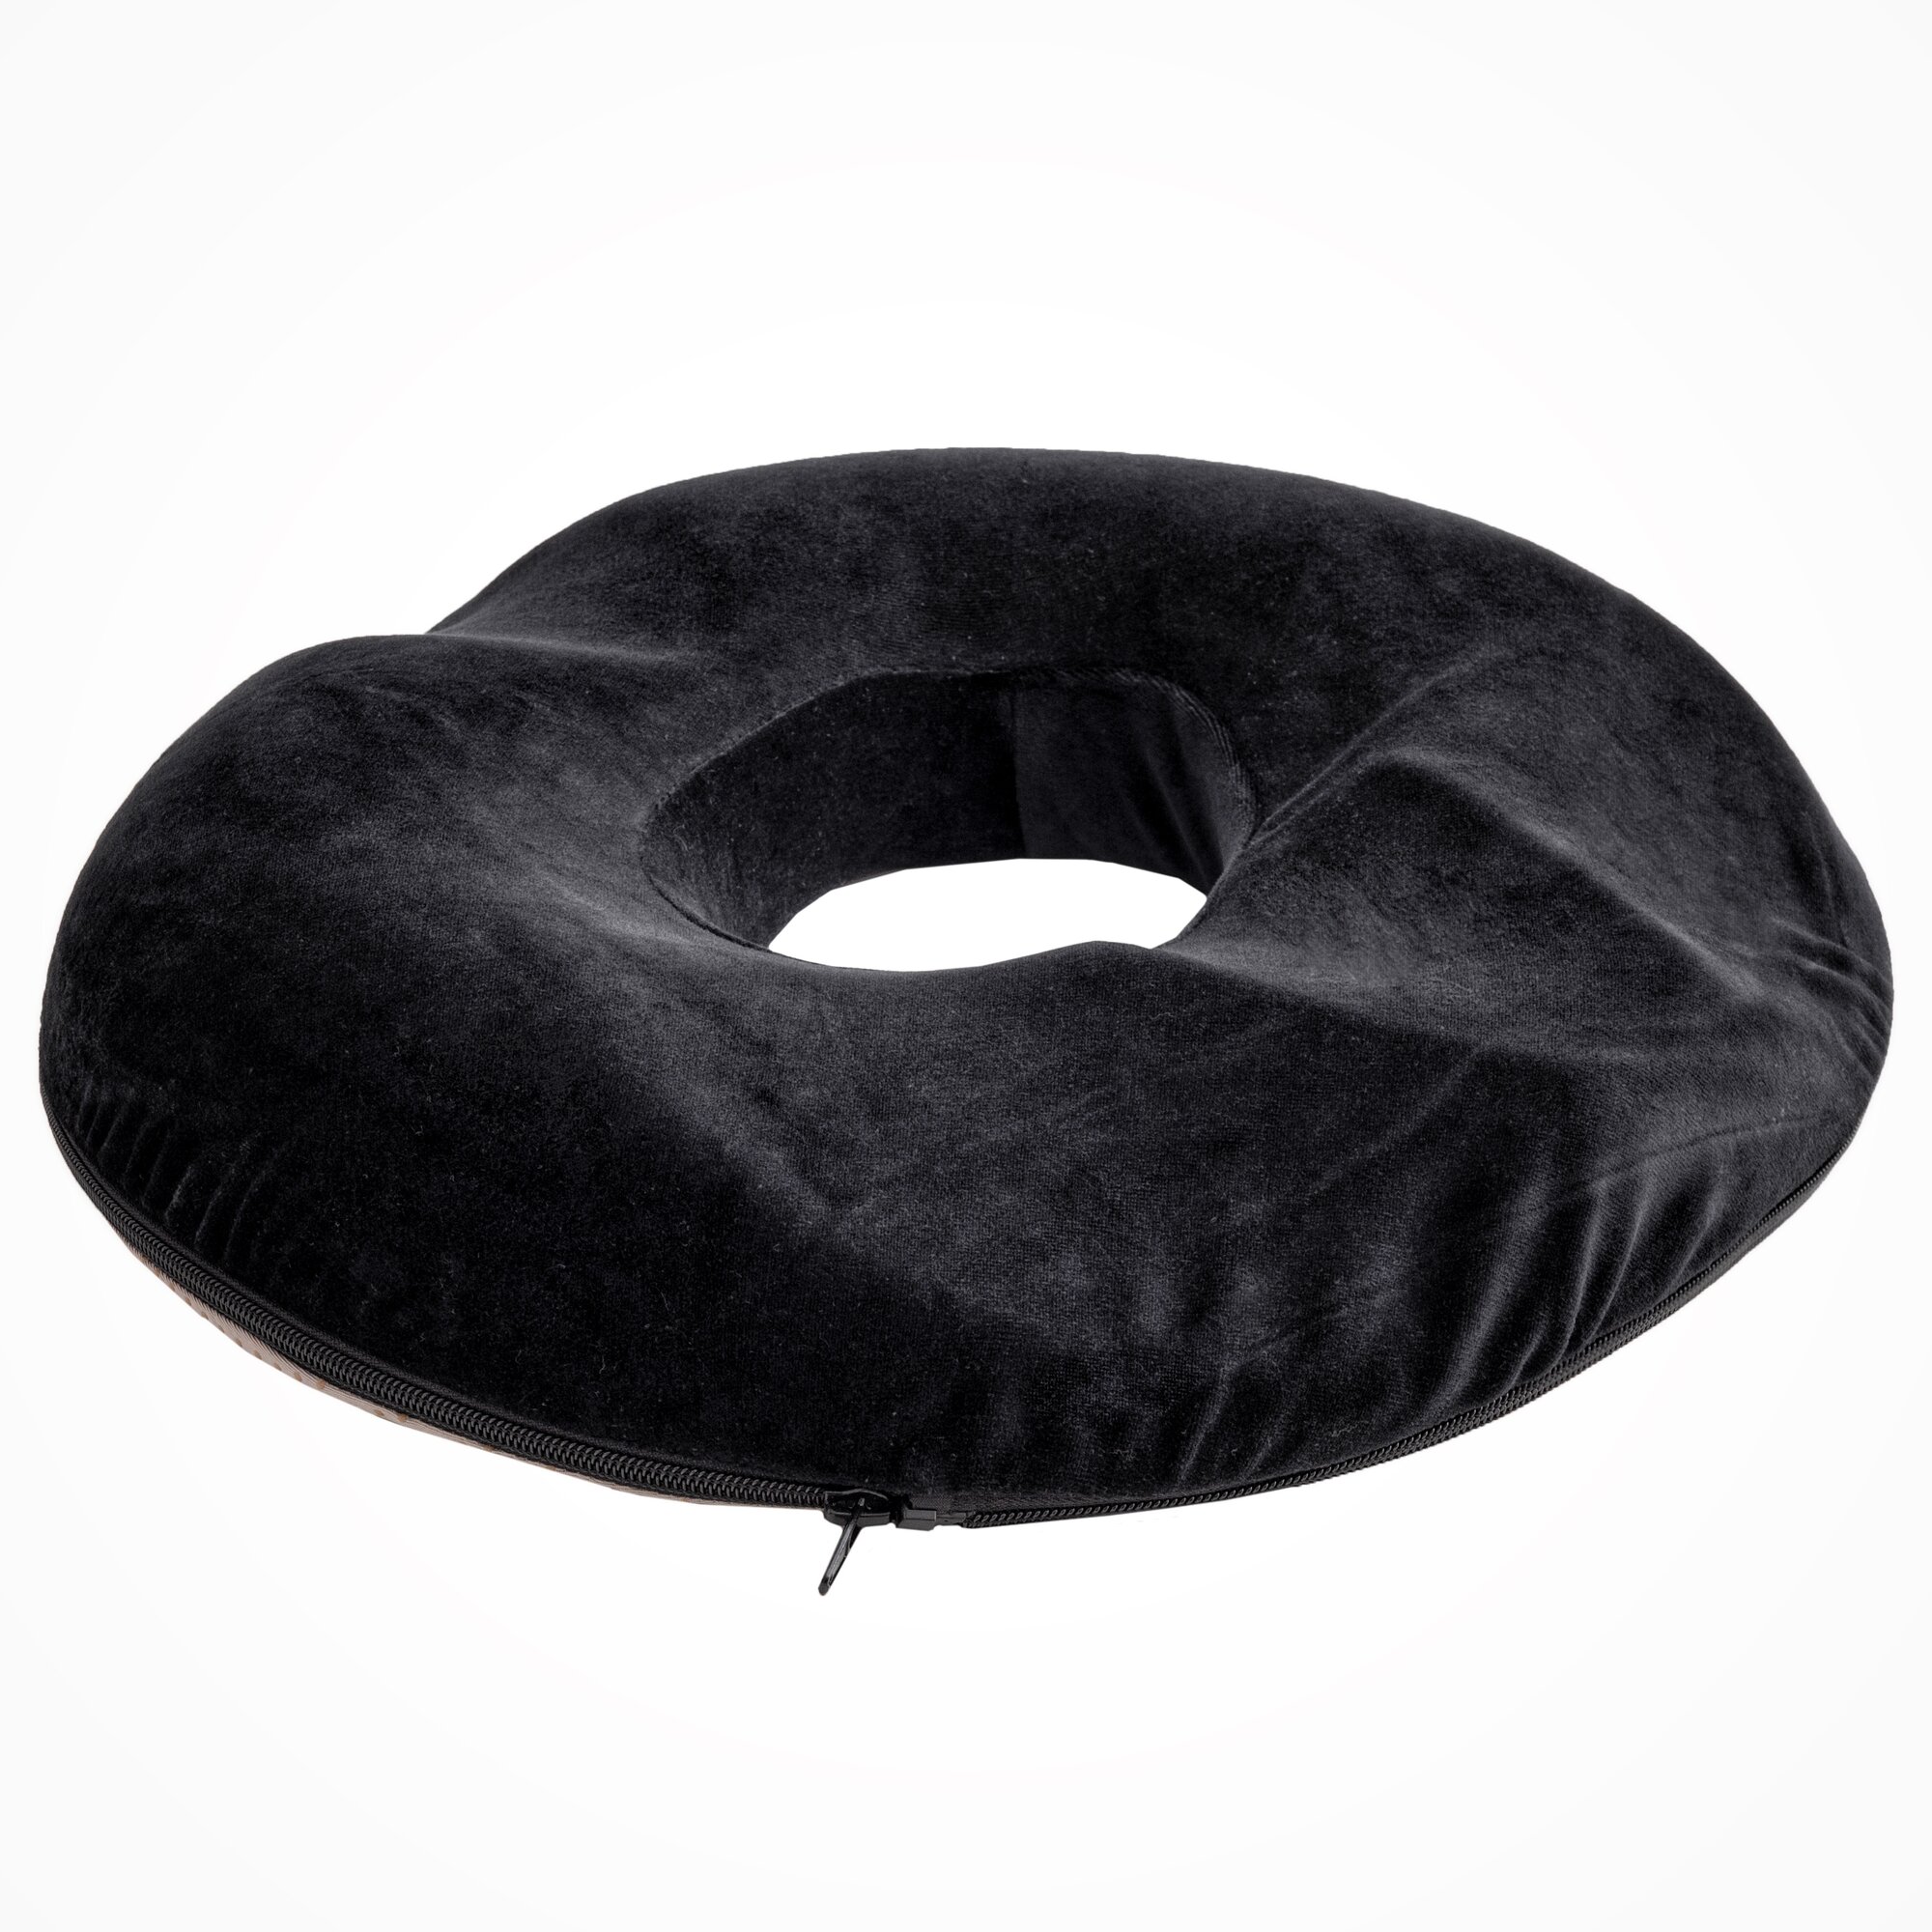 Ортопедическая подушка для сидения Mvita круглой формы с отверстием и эффектом памяти